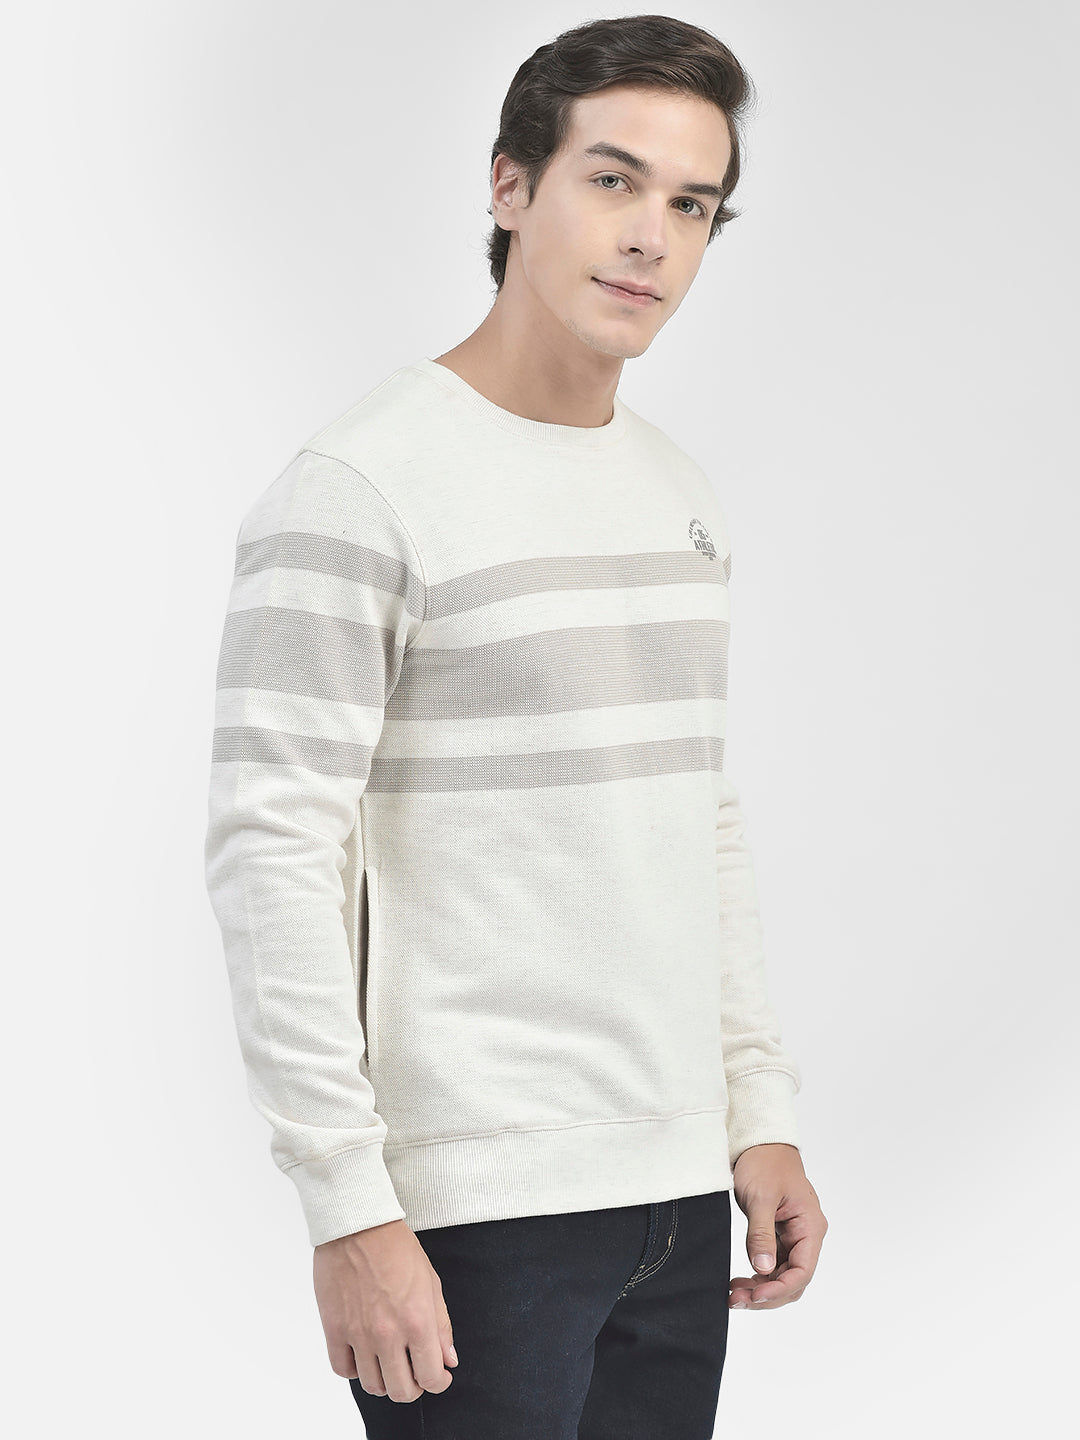 Grey Striped Round Neck Sweatshirt-Men Sweatshirts-Crimsoune Club